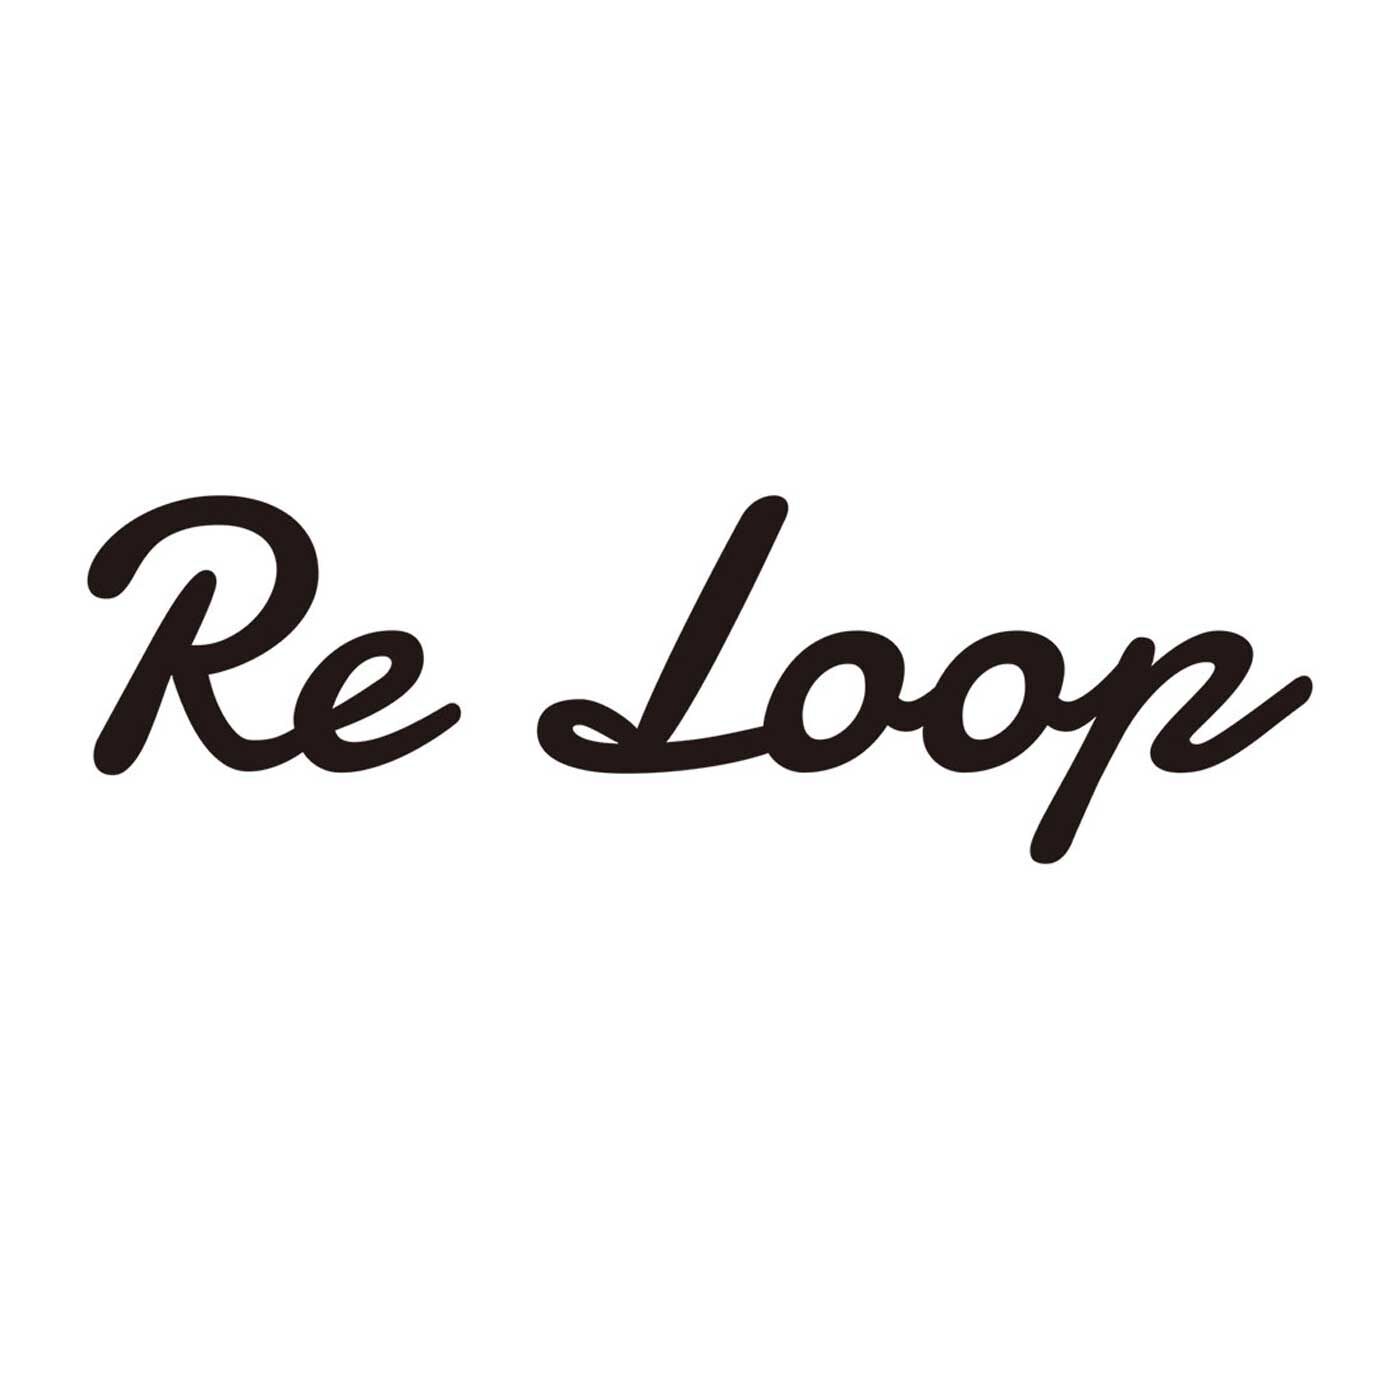 フェリシモの雑貨 Kraso|ReLoop コーヒー豆殻染スラブミックス ソックス〈カフェラテ〉|【Re Loop】奈良の老舗靴下工場「SOUKI」のブランドです。人と環境にやさしい素材を使い、代々受け継がれてきた技術や知識を次世代に引き継ぐことを使命に生まれました。使用している「リサイクル糸」は、明治大正時代から続けられてきた技術をルーツとする、紡績方法でつくられたもの。未利用のまま廃棄される繊維原料や、紡績、織布工場で発生する糸くず、布地などを集めて綿にほぐしなおした原料を使用して、糸に紡いだもの。空気を多く含んでいるので、「ナチュラルなふくらみ」と「かさ高性」があります。そんなリサイクル糸を使い、希少な編み機でていねいに編み上げられた「Re Loop」の靴下は、ちょっぴり特別。それでいて毎日履くのにぴったりの相棒的存在です。